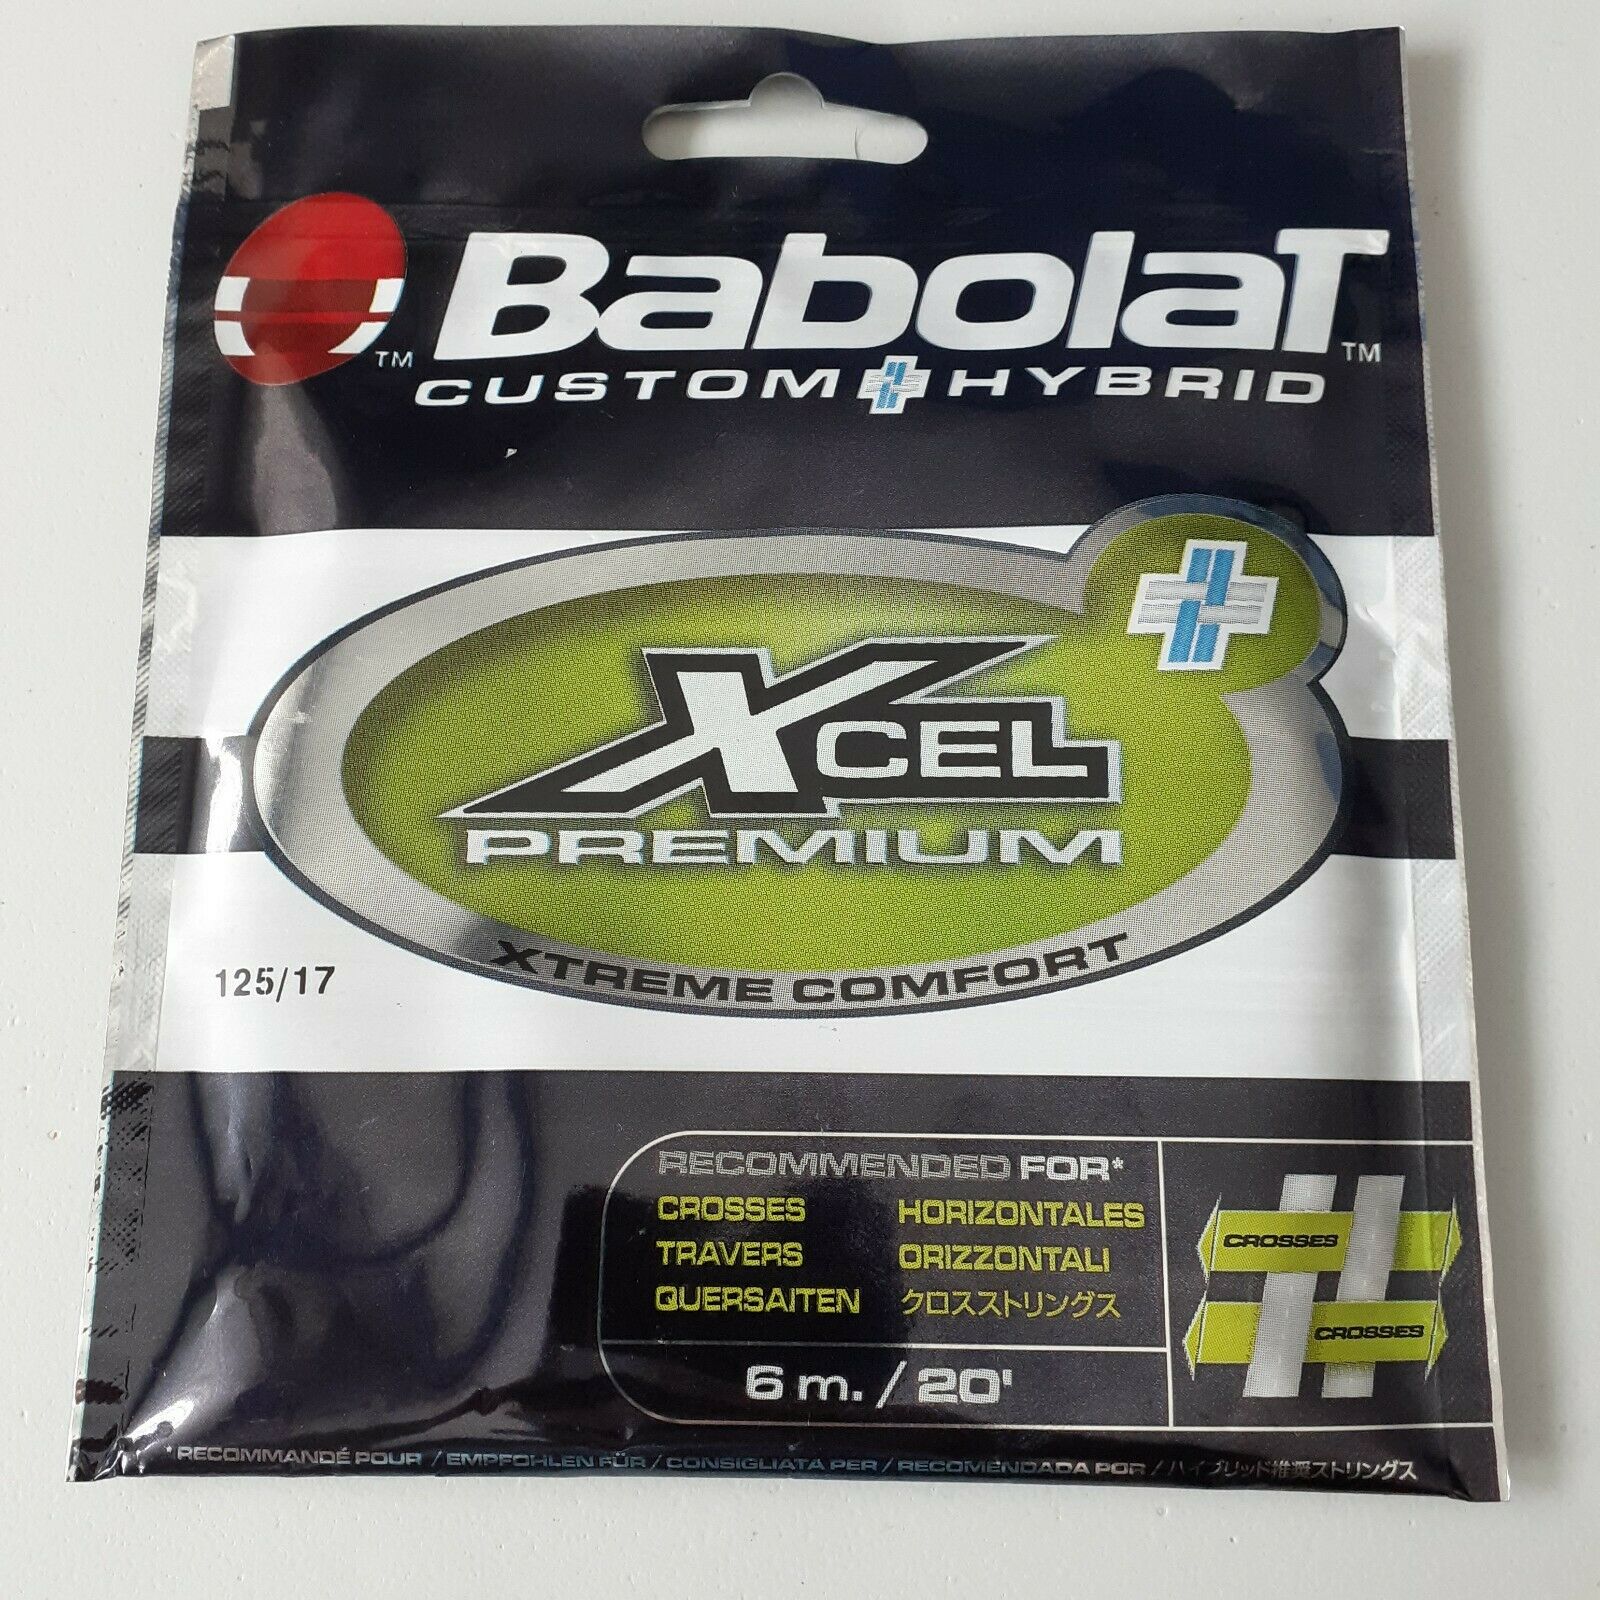 Babolat (custom Hybrid) Xcel Premium 6m/20' String Recommended For Crosses -